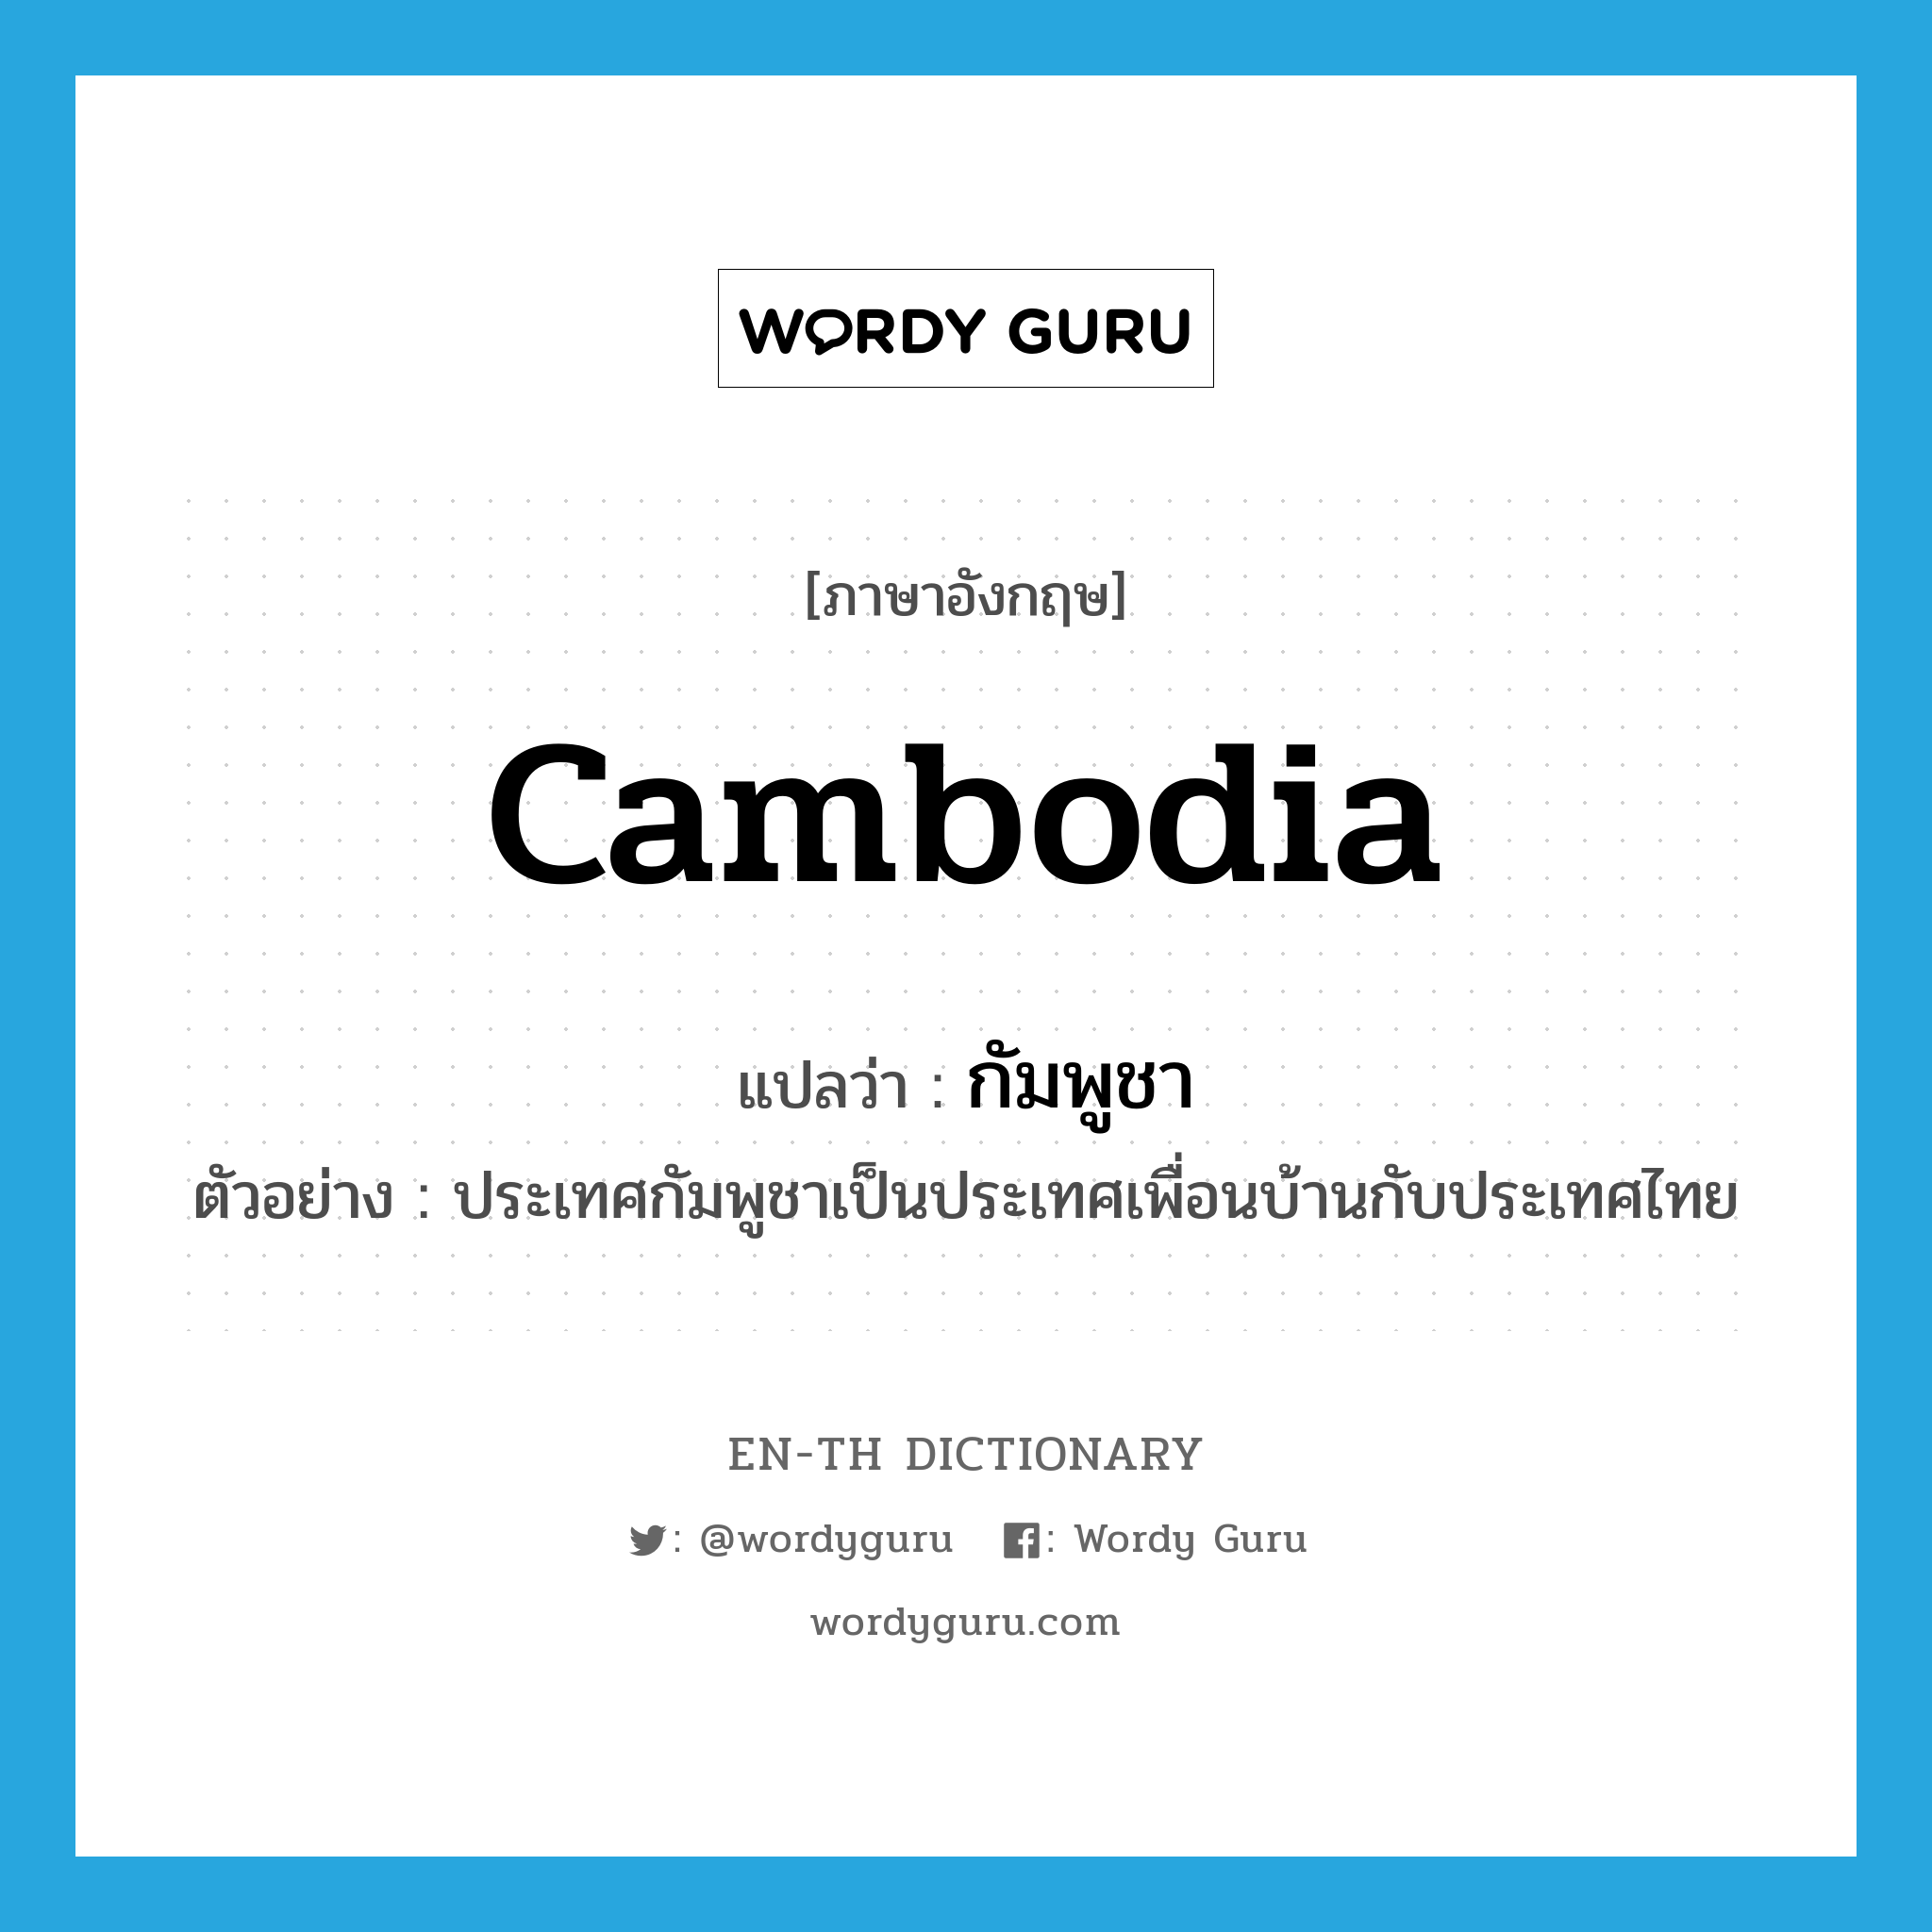 กัมพูชา ภาษาอังกฤษ?, คำศัพท์ภาษาอังกฤษ กัมพูชา แปลว่า Cambodia ประเภท N ตัวอย่าง ประเทศกัมพูชาเป็นประเทศเพื่อนบ้านกับประเทศไทย หมวด N